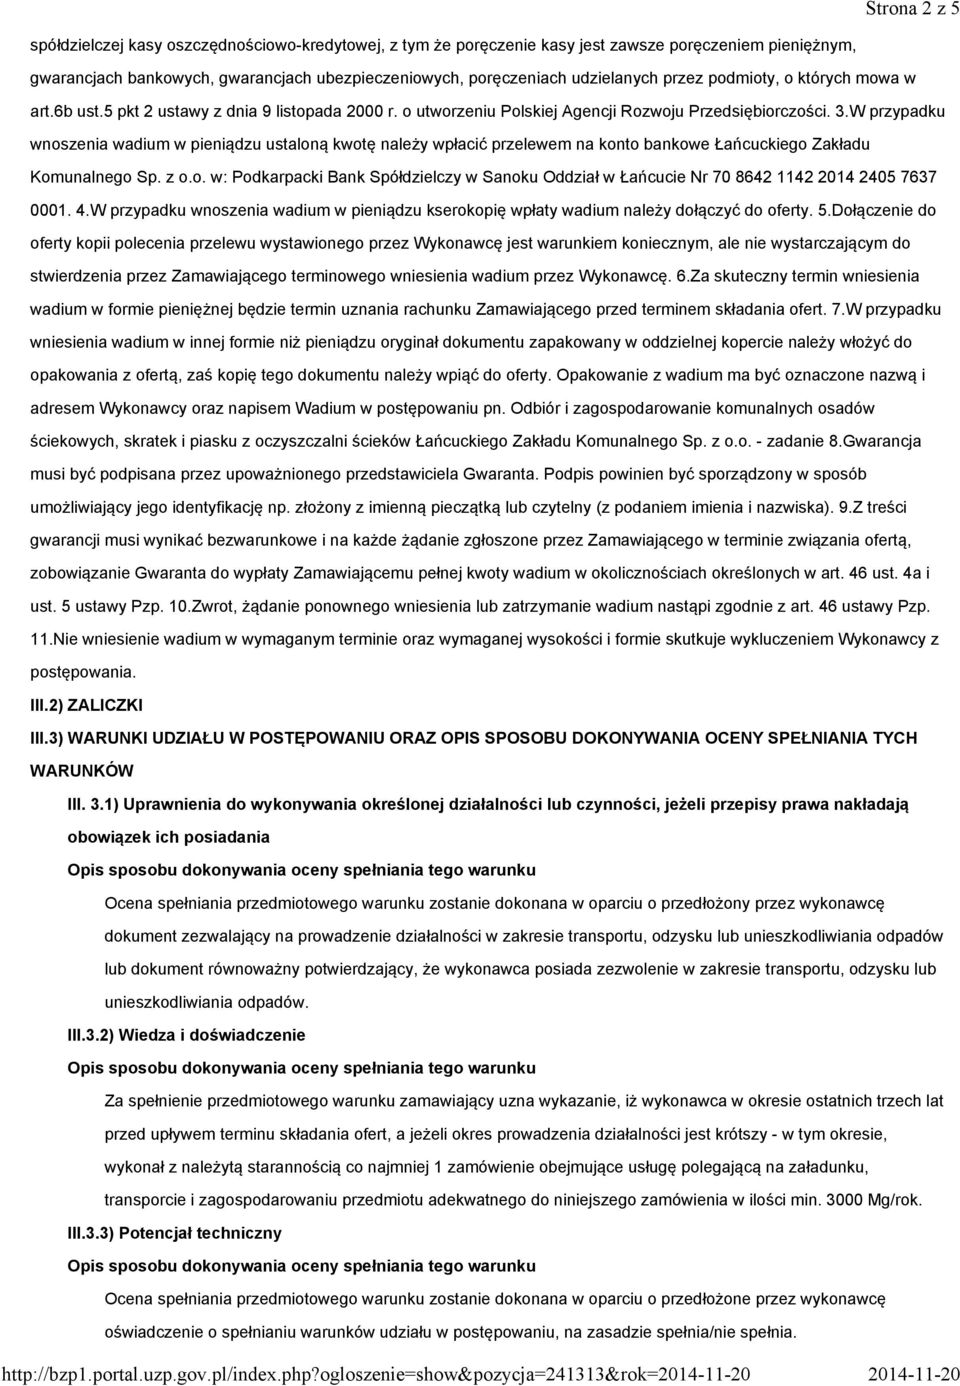 ubezpieczeniowych, poręczeniach udzielanych przez podmioty, o których mowa w art.6b ust.5 pkt 2 ustawy z dnia 9 listopada 2000 r. o utworzeniu Polskiej Agencji Rozwoju Przedsiębiorczości. 3.